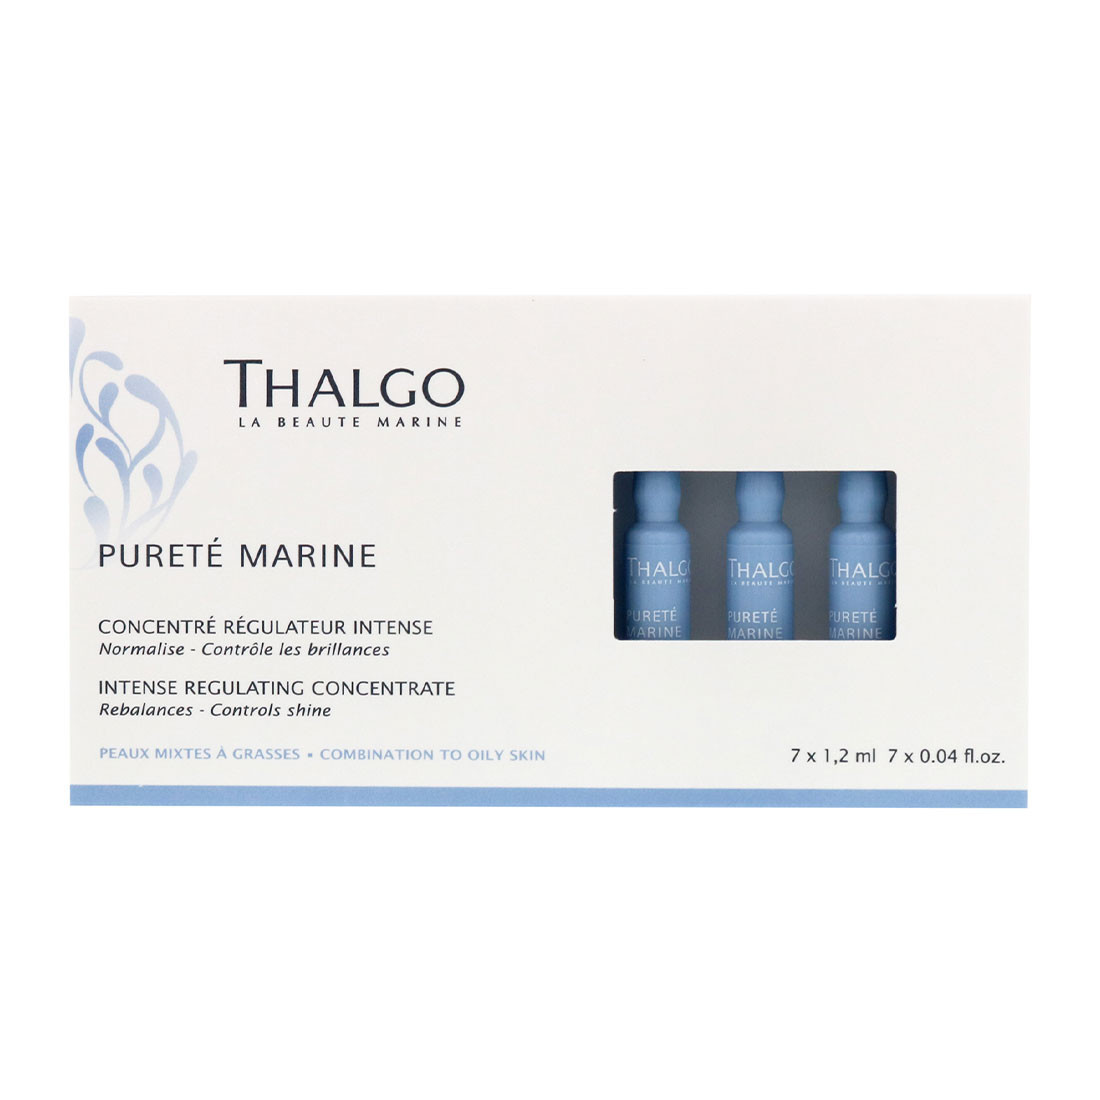 Себорегулирующий концентрат для лица Thalgo Purete Marine Intense Regulating Concentrate